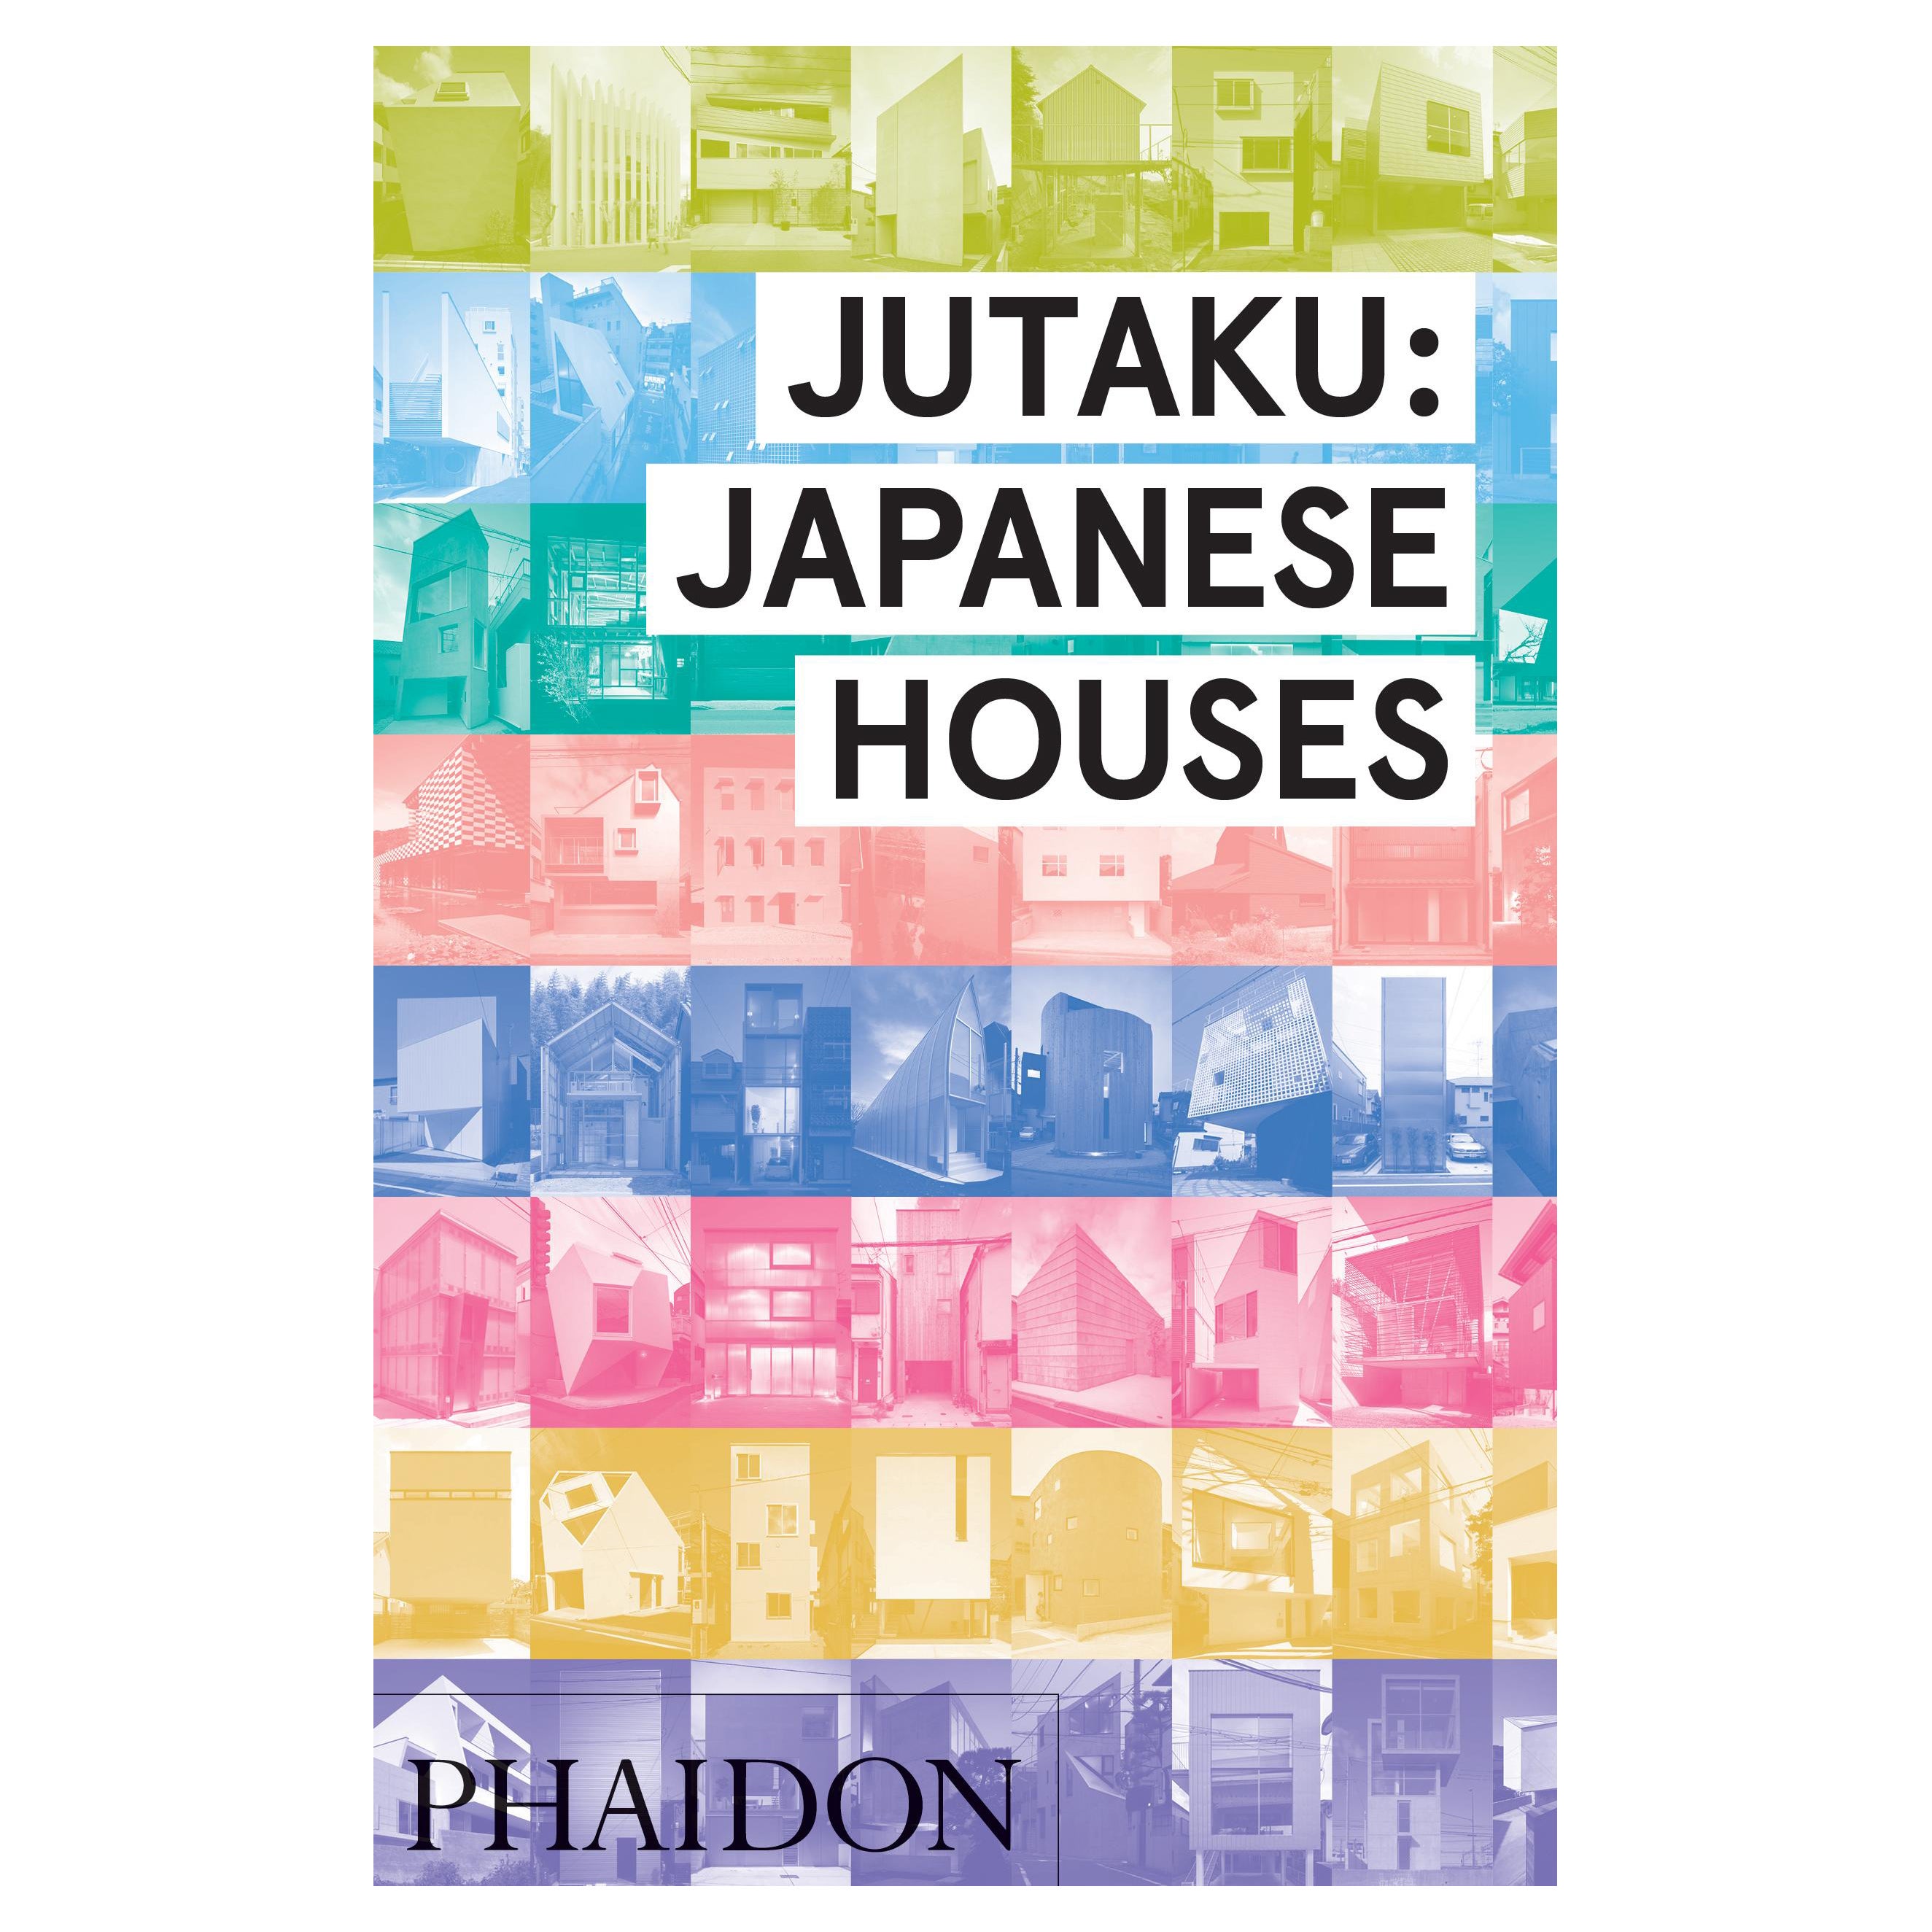 Le livre Jutaku : Japanese Houses